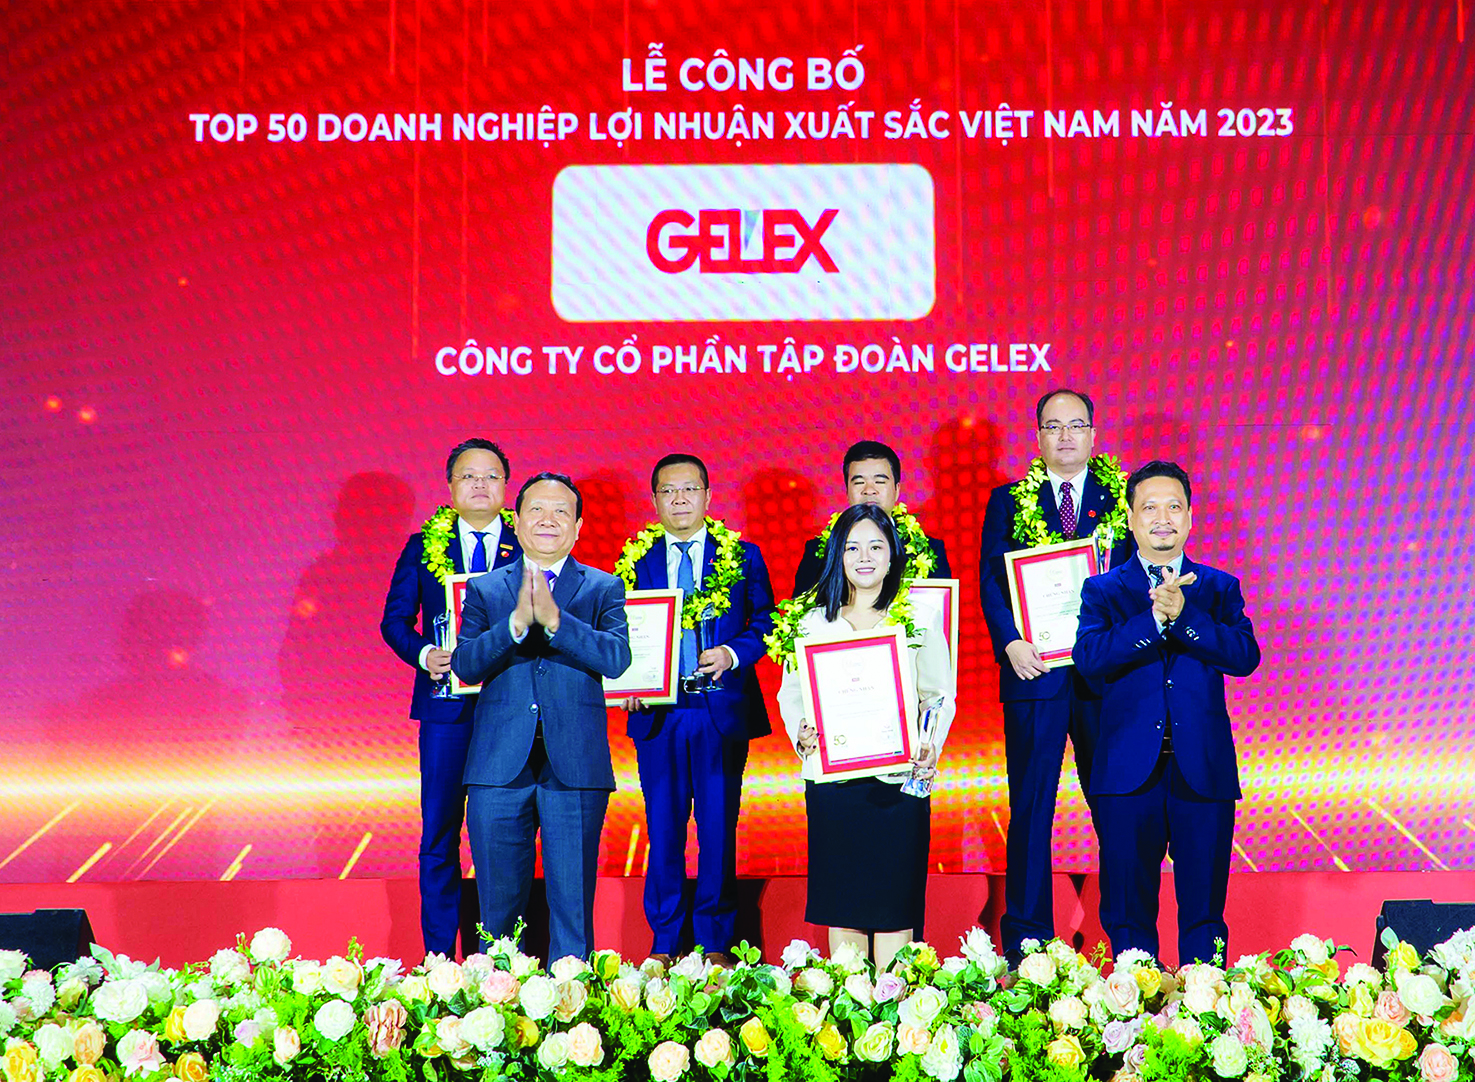  Bà Nguyễn Hồng Nhung - Giám đốc Truyền thông Tập đoàn GELEX nhận Cúp và chứng nhận Top 50 Doanh nghiệp lợi nhuận tốt nhất Việt Nam – năm 2023.